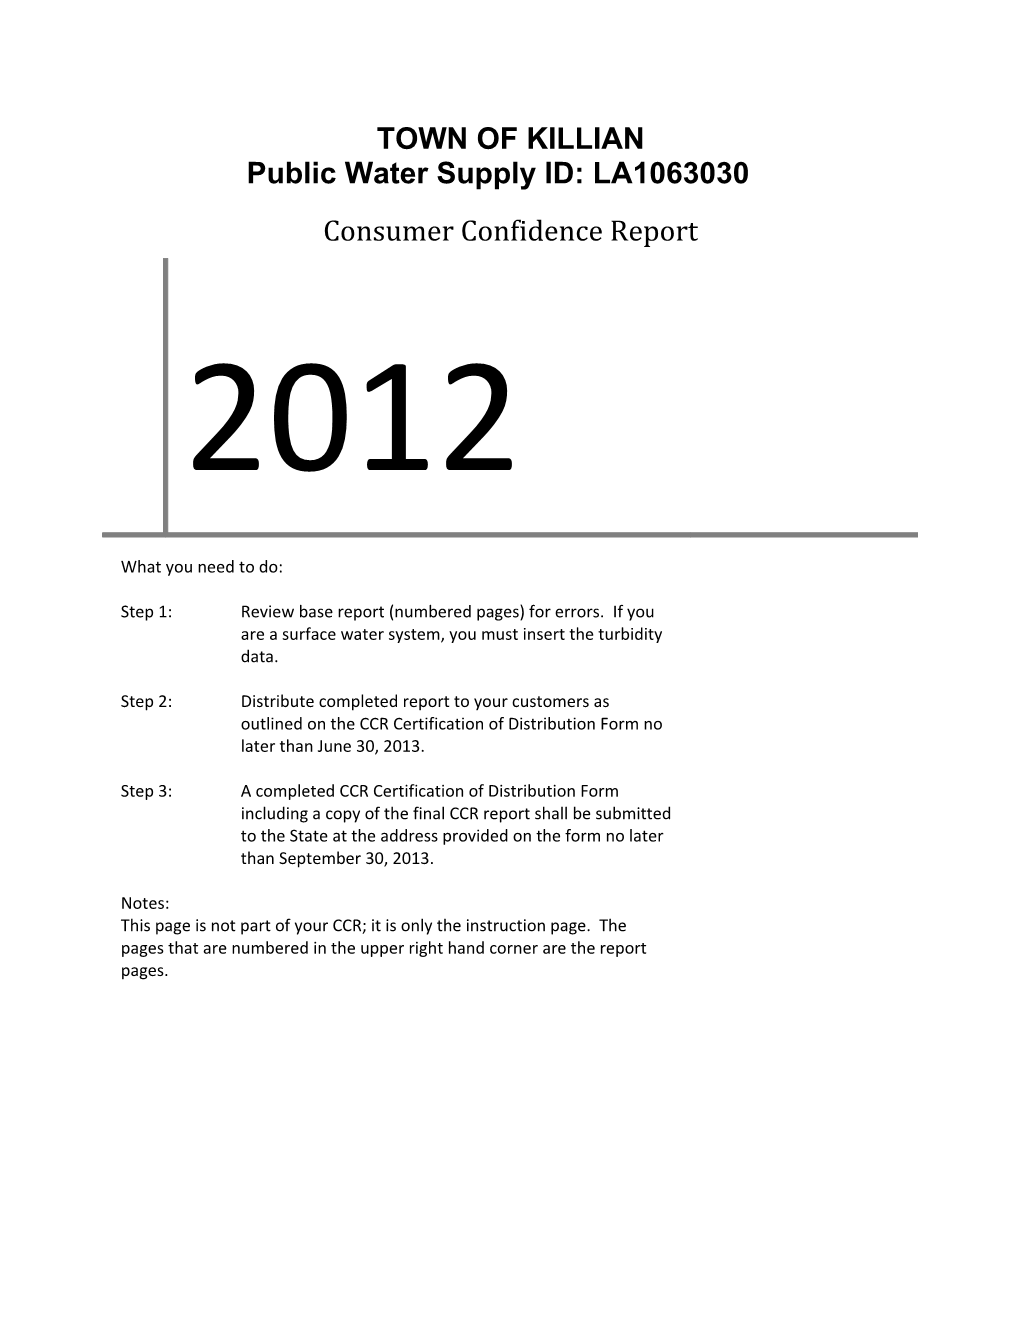 Public Water Supply ID: LA1063030